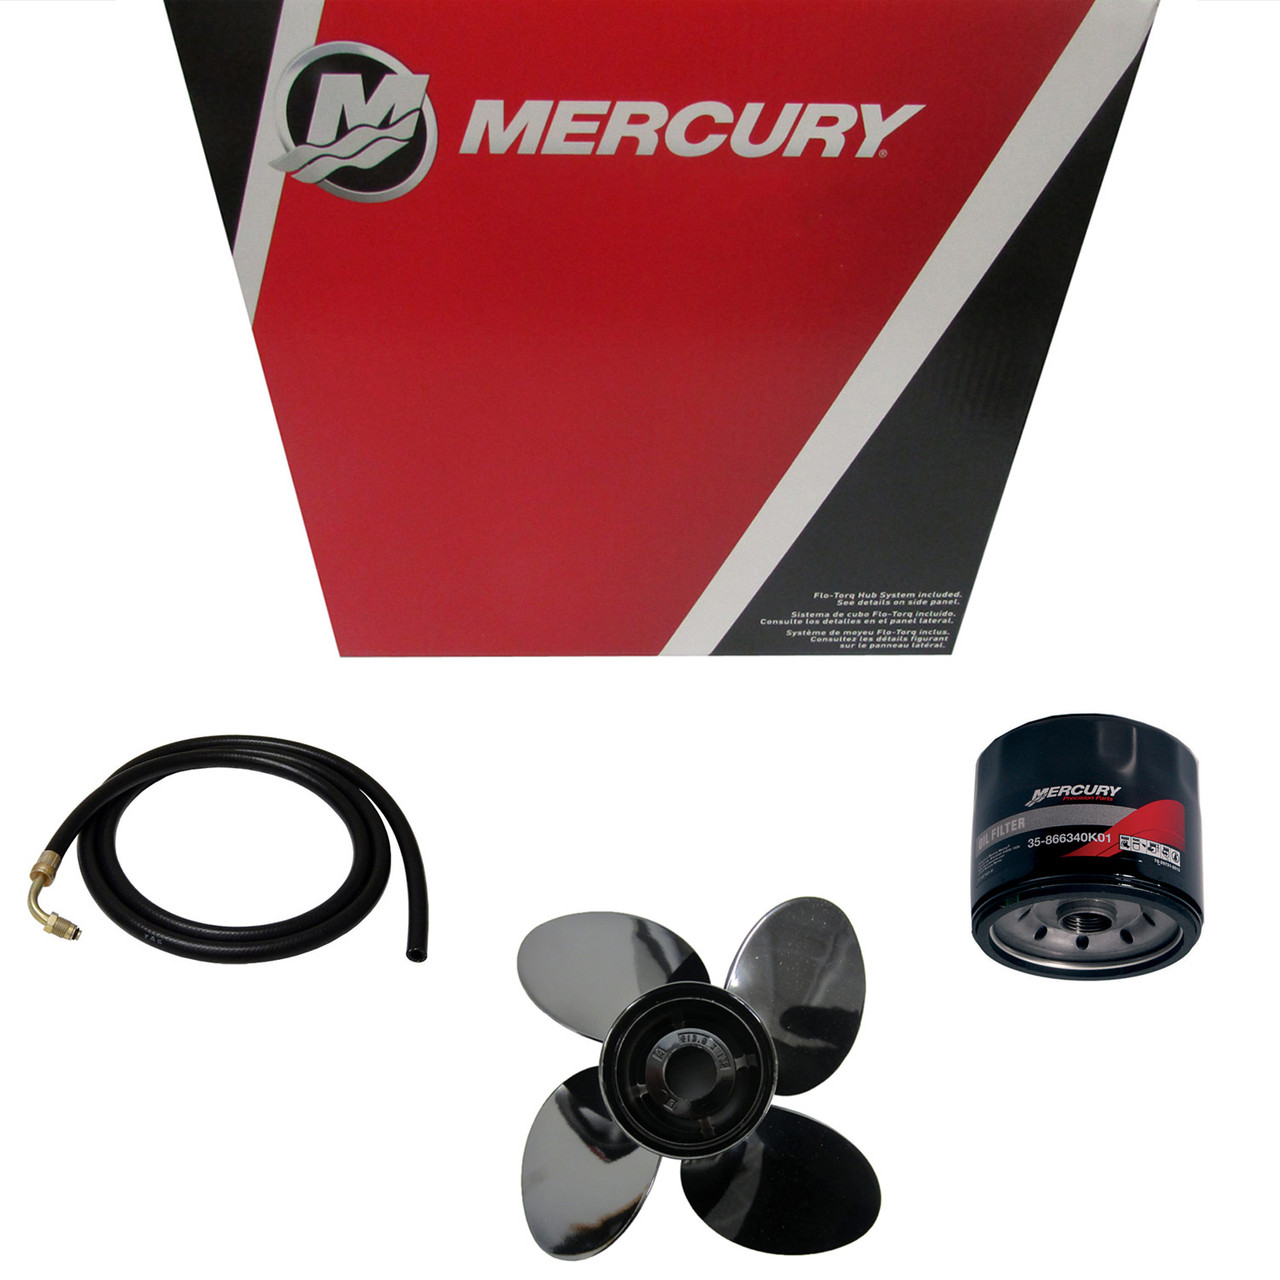 Mercury Marine / Mercruiser New OEM Enert Eco 16X17rh, 48-8M0127041